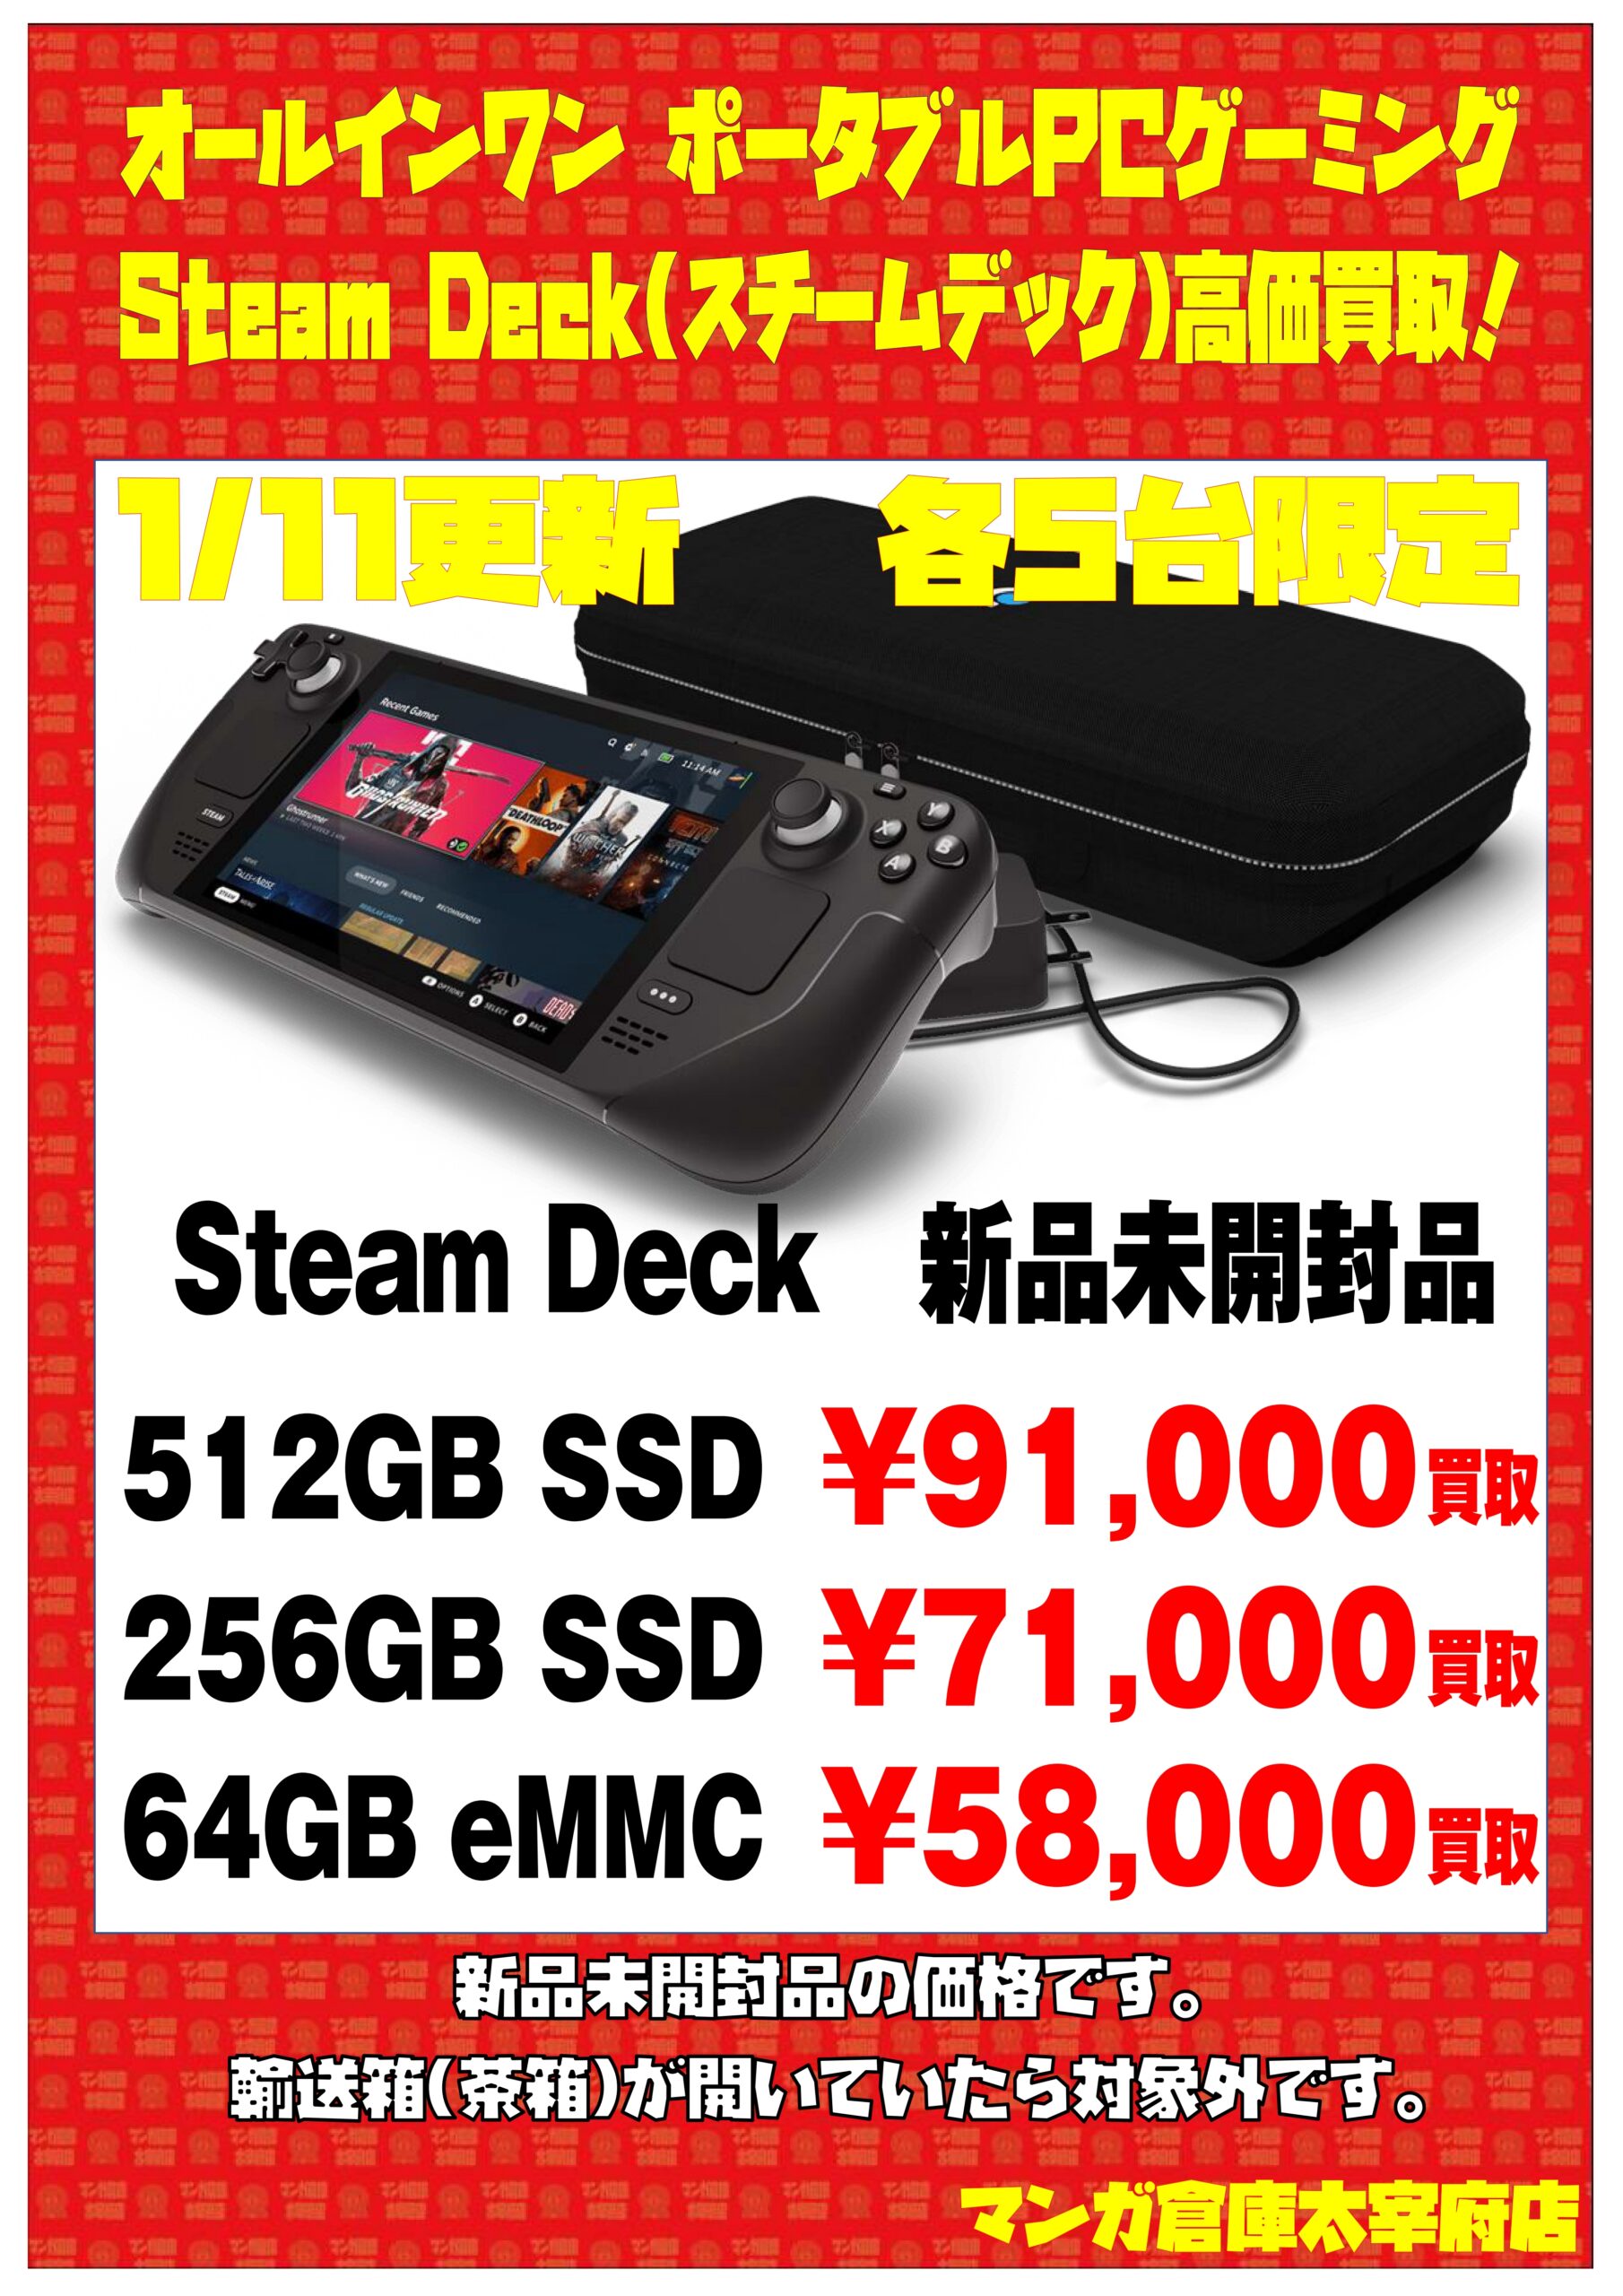 美しい Steam Deck 64GB スチームデック steamdeck ecousarecycling.com